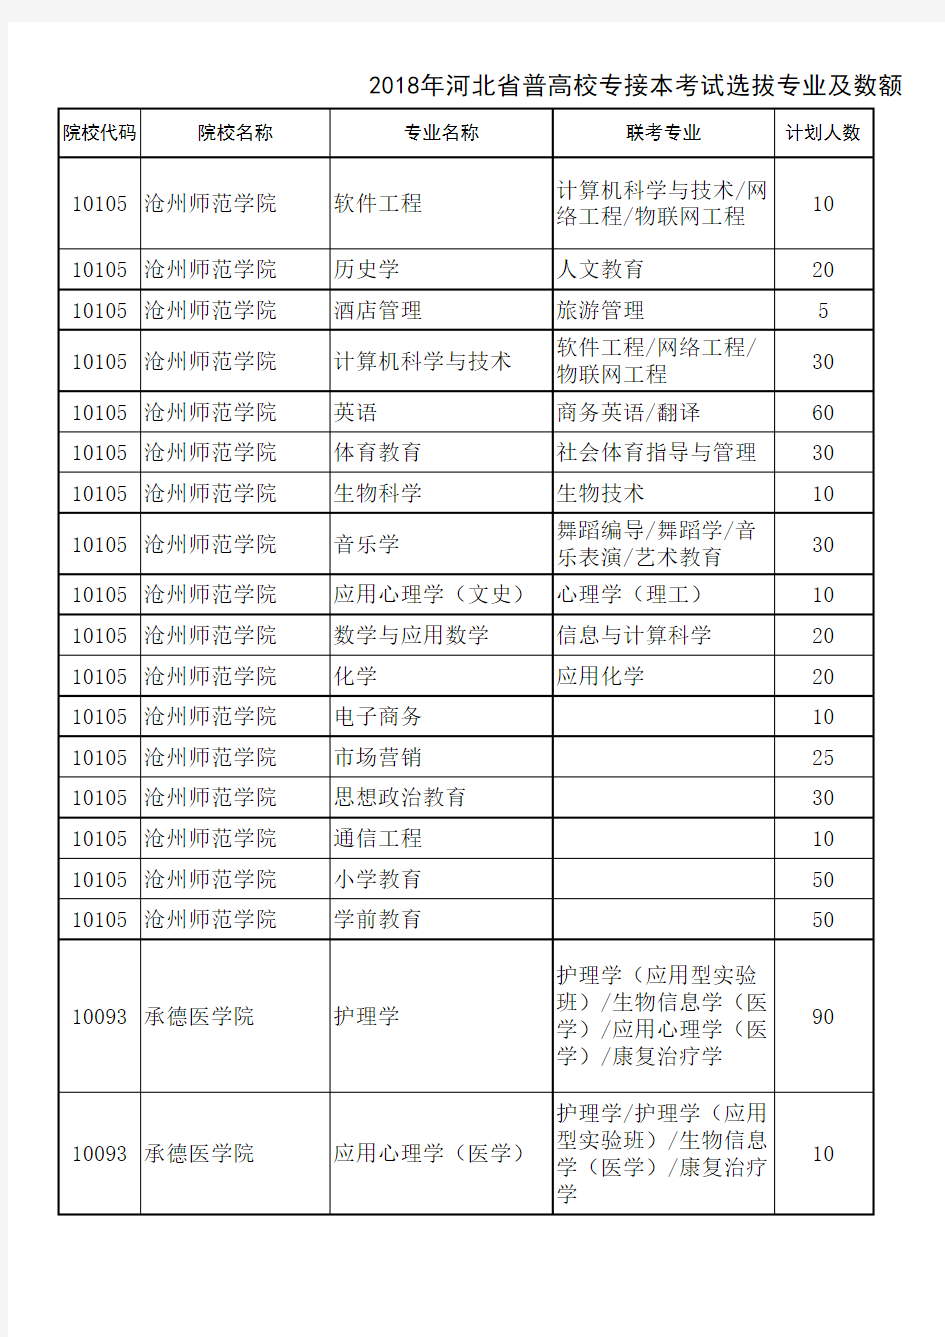 2018年河北省普通高校专接本考试选拔专业及数额